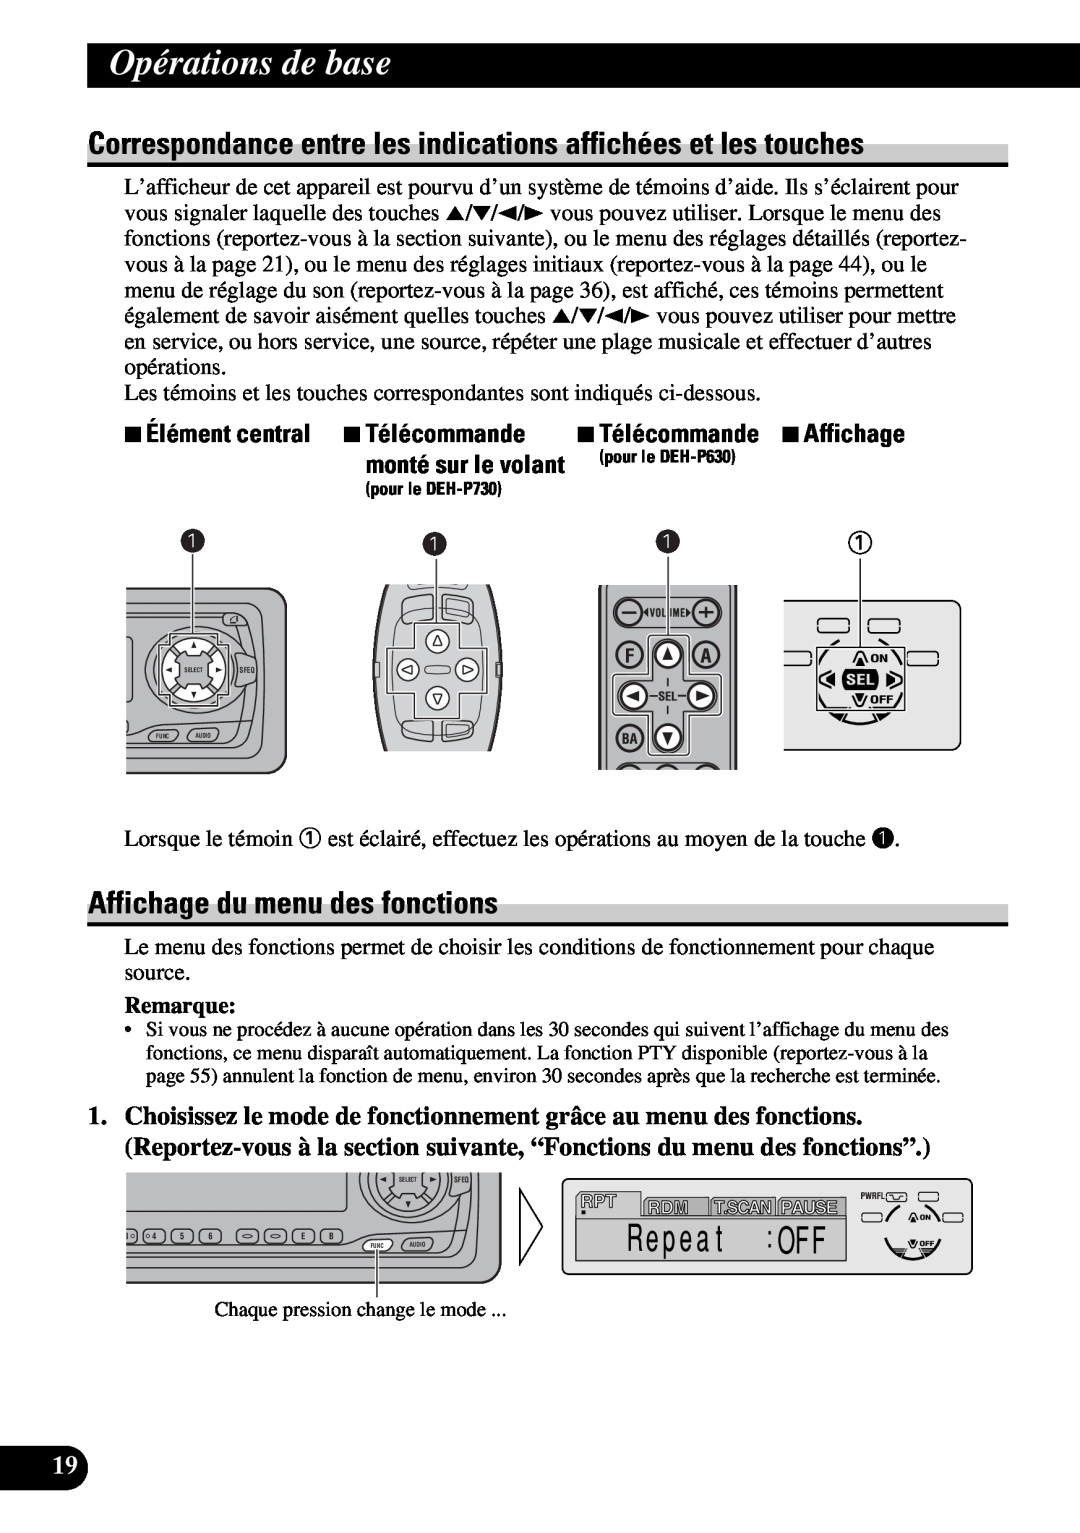 Pioneer DEH-P730 Correspondance entre les indications affichées et les touches, Affichage du menu des fonctions, Remarque 